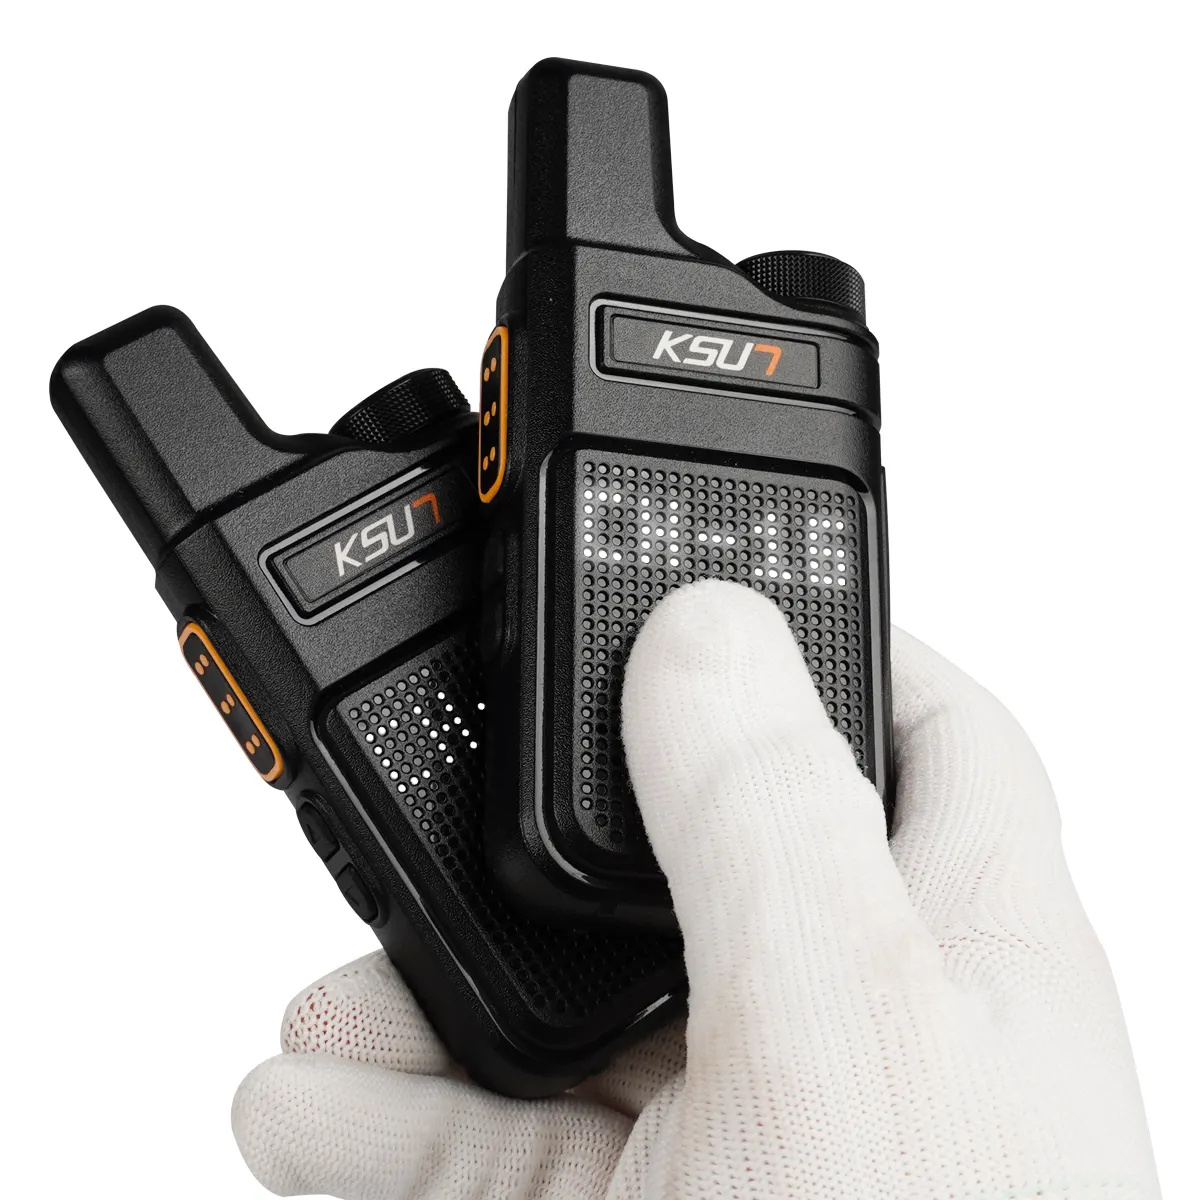 PMR 446 Talkie Walkie Portable Mini Communications Radio Pro Talkie Walkie émetteur-récepteur radio bidirectionnel KSUT M6 Qualité